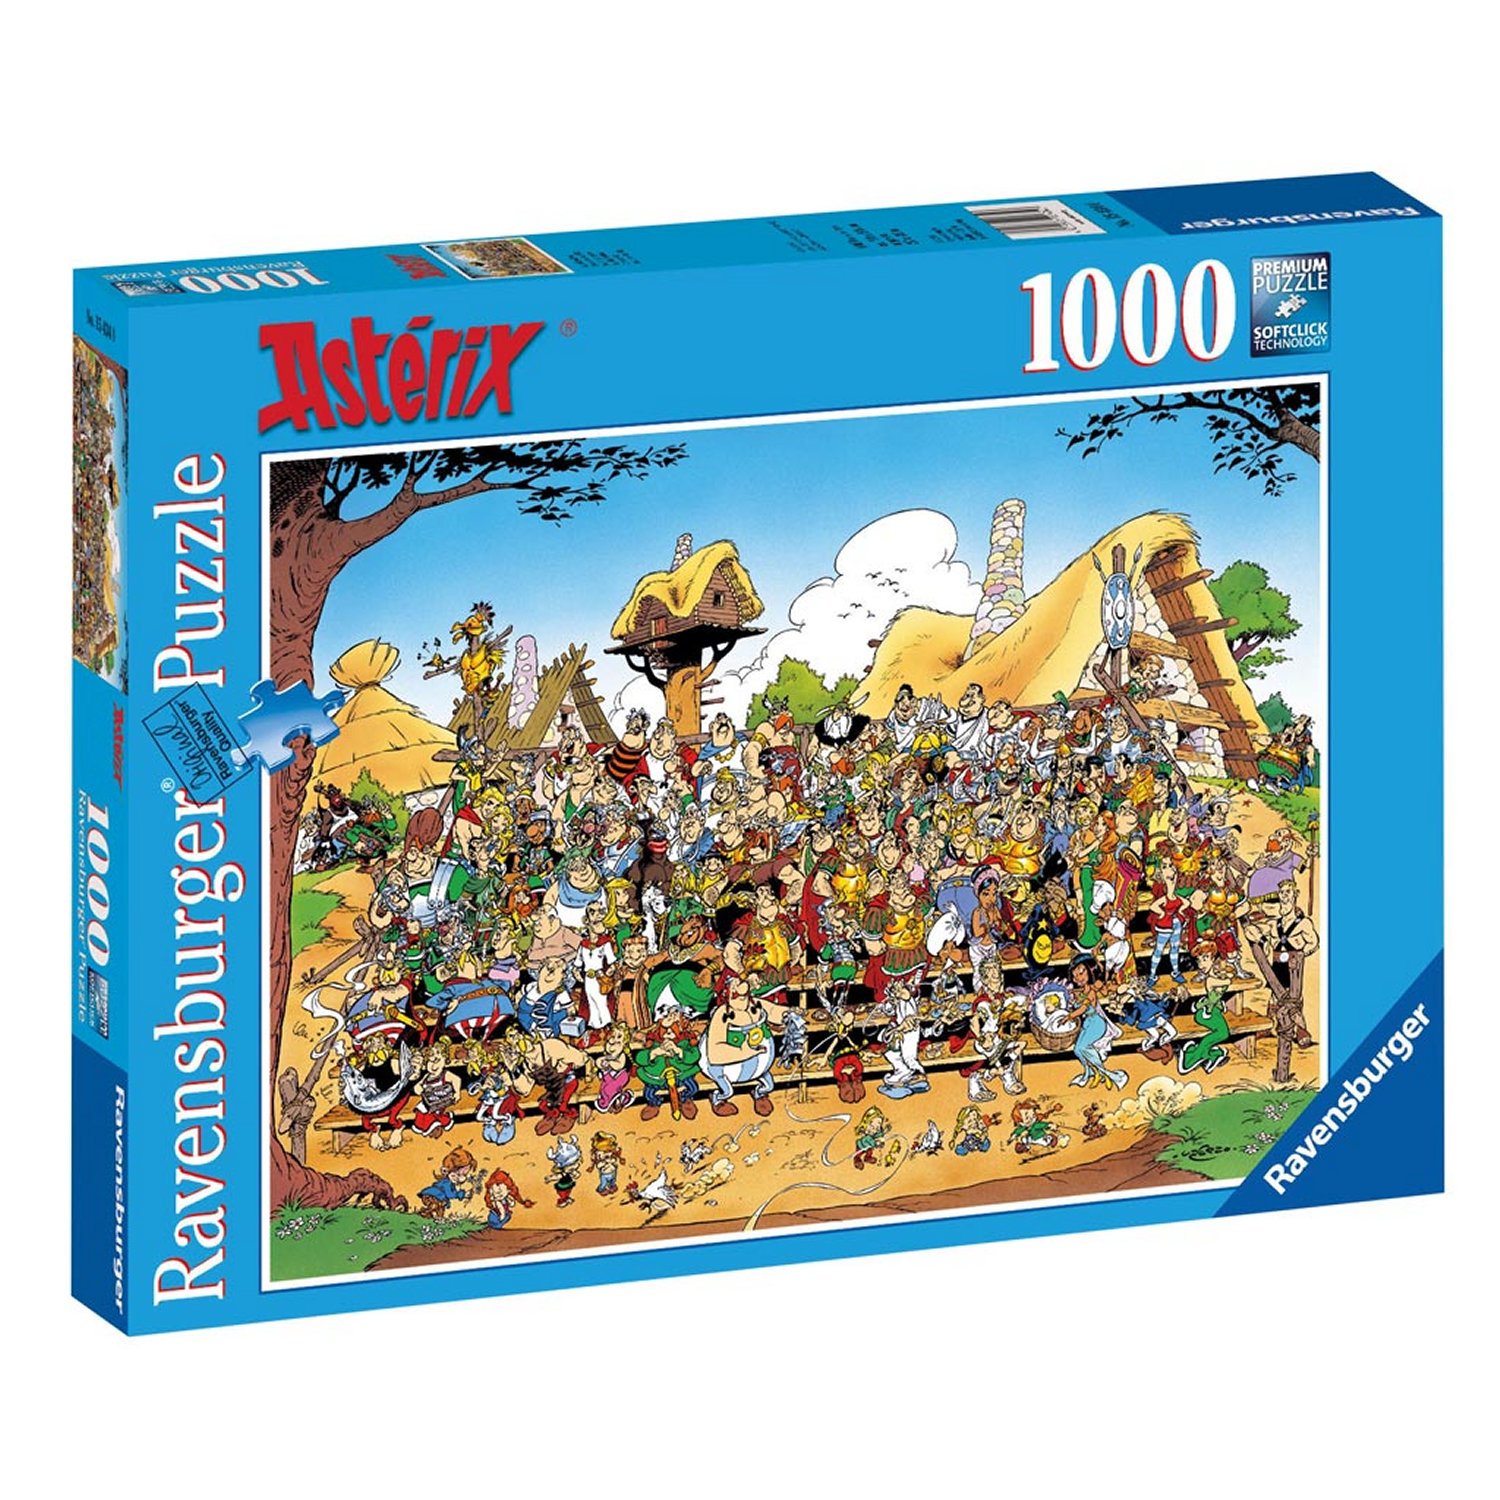 Puzzle 1000 pièces - Astérix et Obélix : Photo de famille